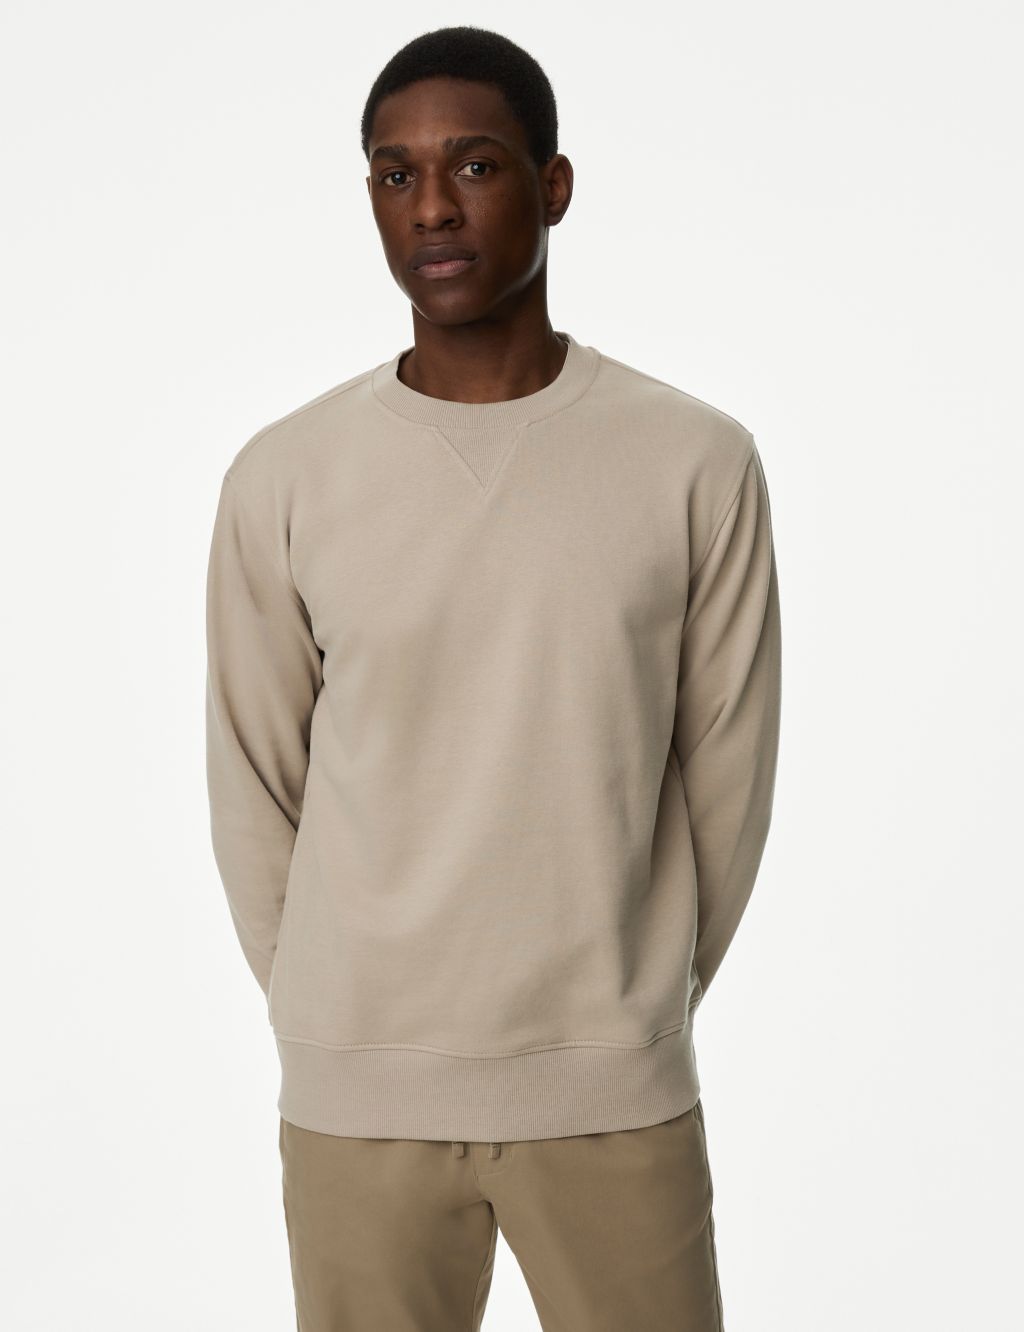 Hoodies + Sweatshirts for Men